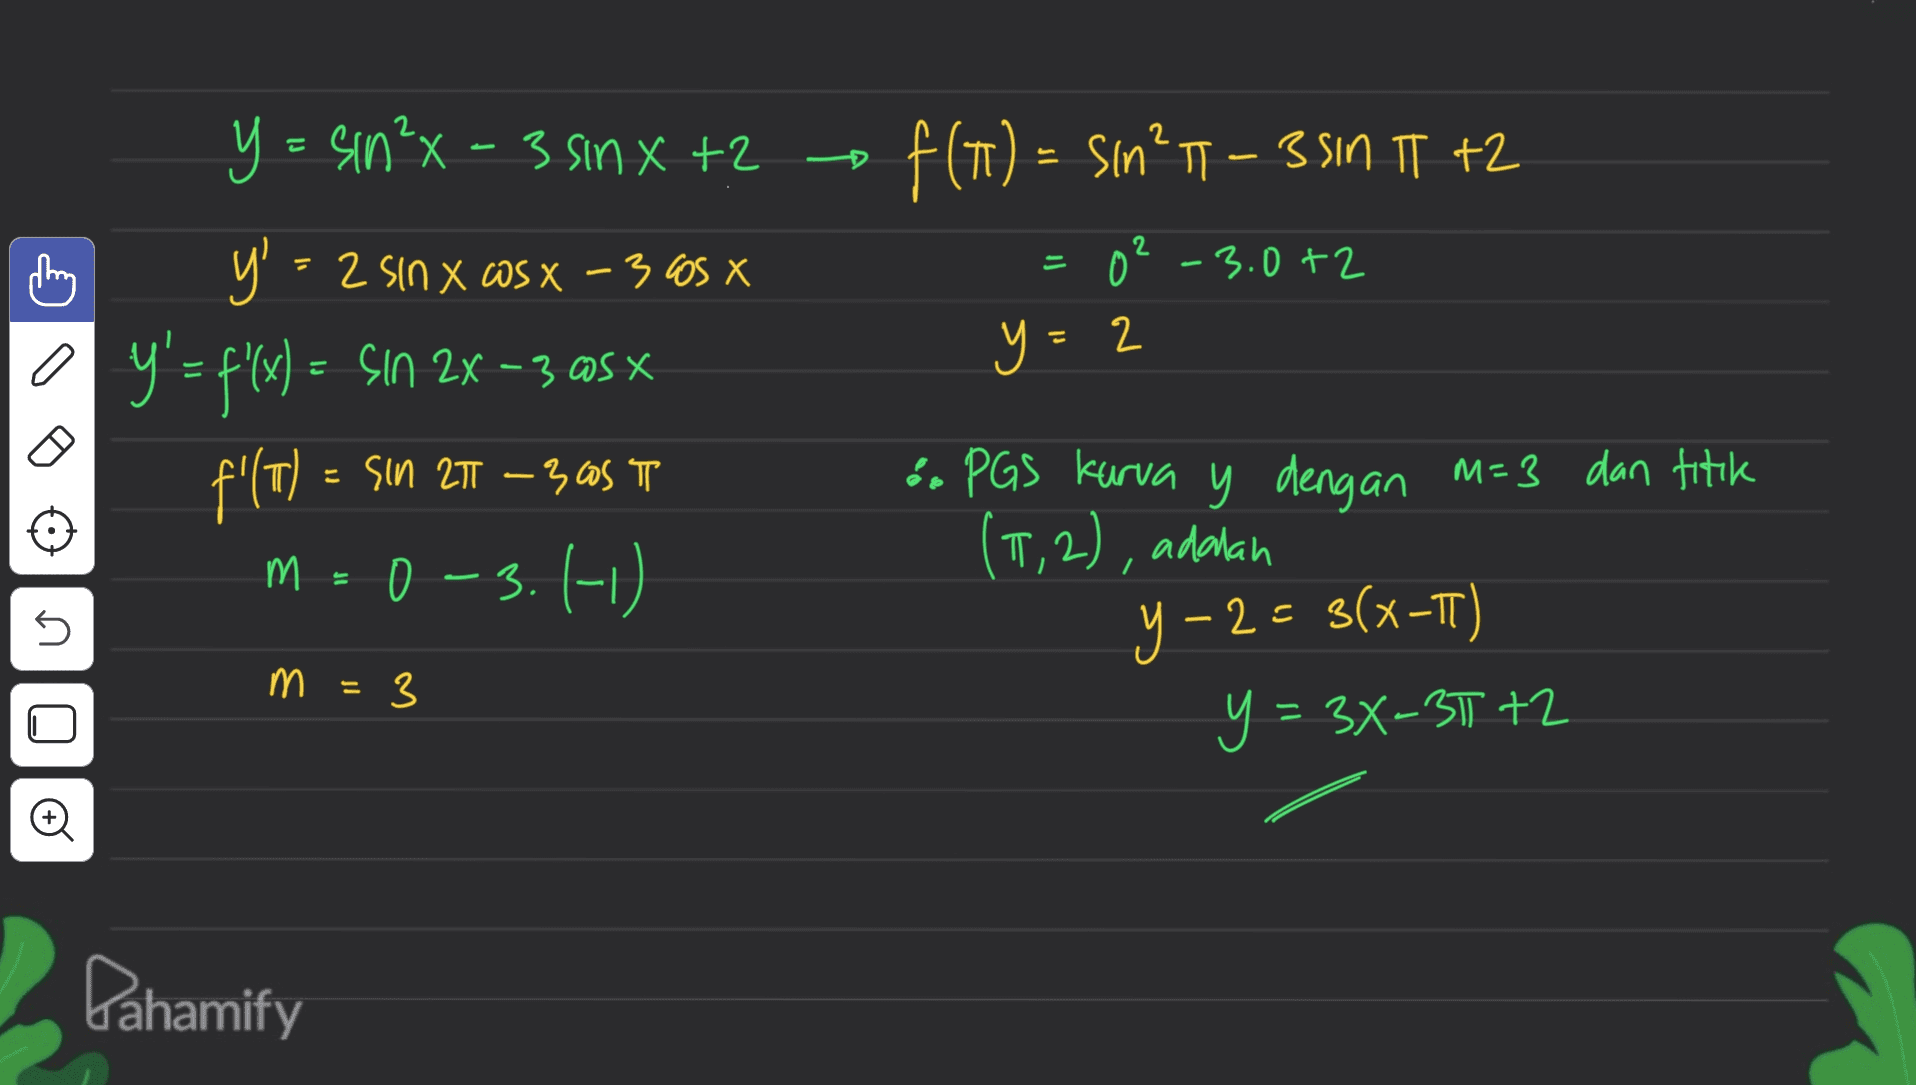 f(1) = sin11 – 3 SIN IT +2 = 02 -3.0 +2 a y = sin²x - 3 sinxt? y' = 2 sin x @sx - 3005 X Y'= f(x) = Sın 2x – 3 @sx f'(T) = Sın 27T – 3,05 TL o 3.(-0. -3 OS y=2 =T (М. 0 & PGS kurva y dengan M=3 dan titik (1,2), adalah 3 y = 34-3772 y-2= S(x-T) 5 - 3 = 3 Pahamify 